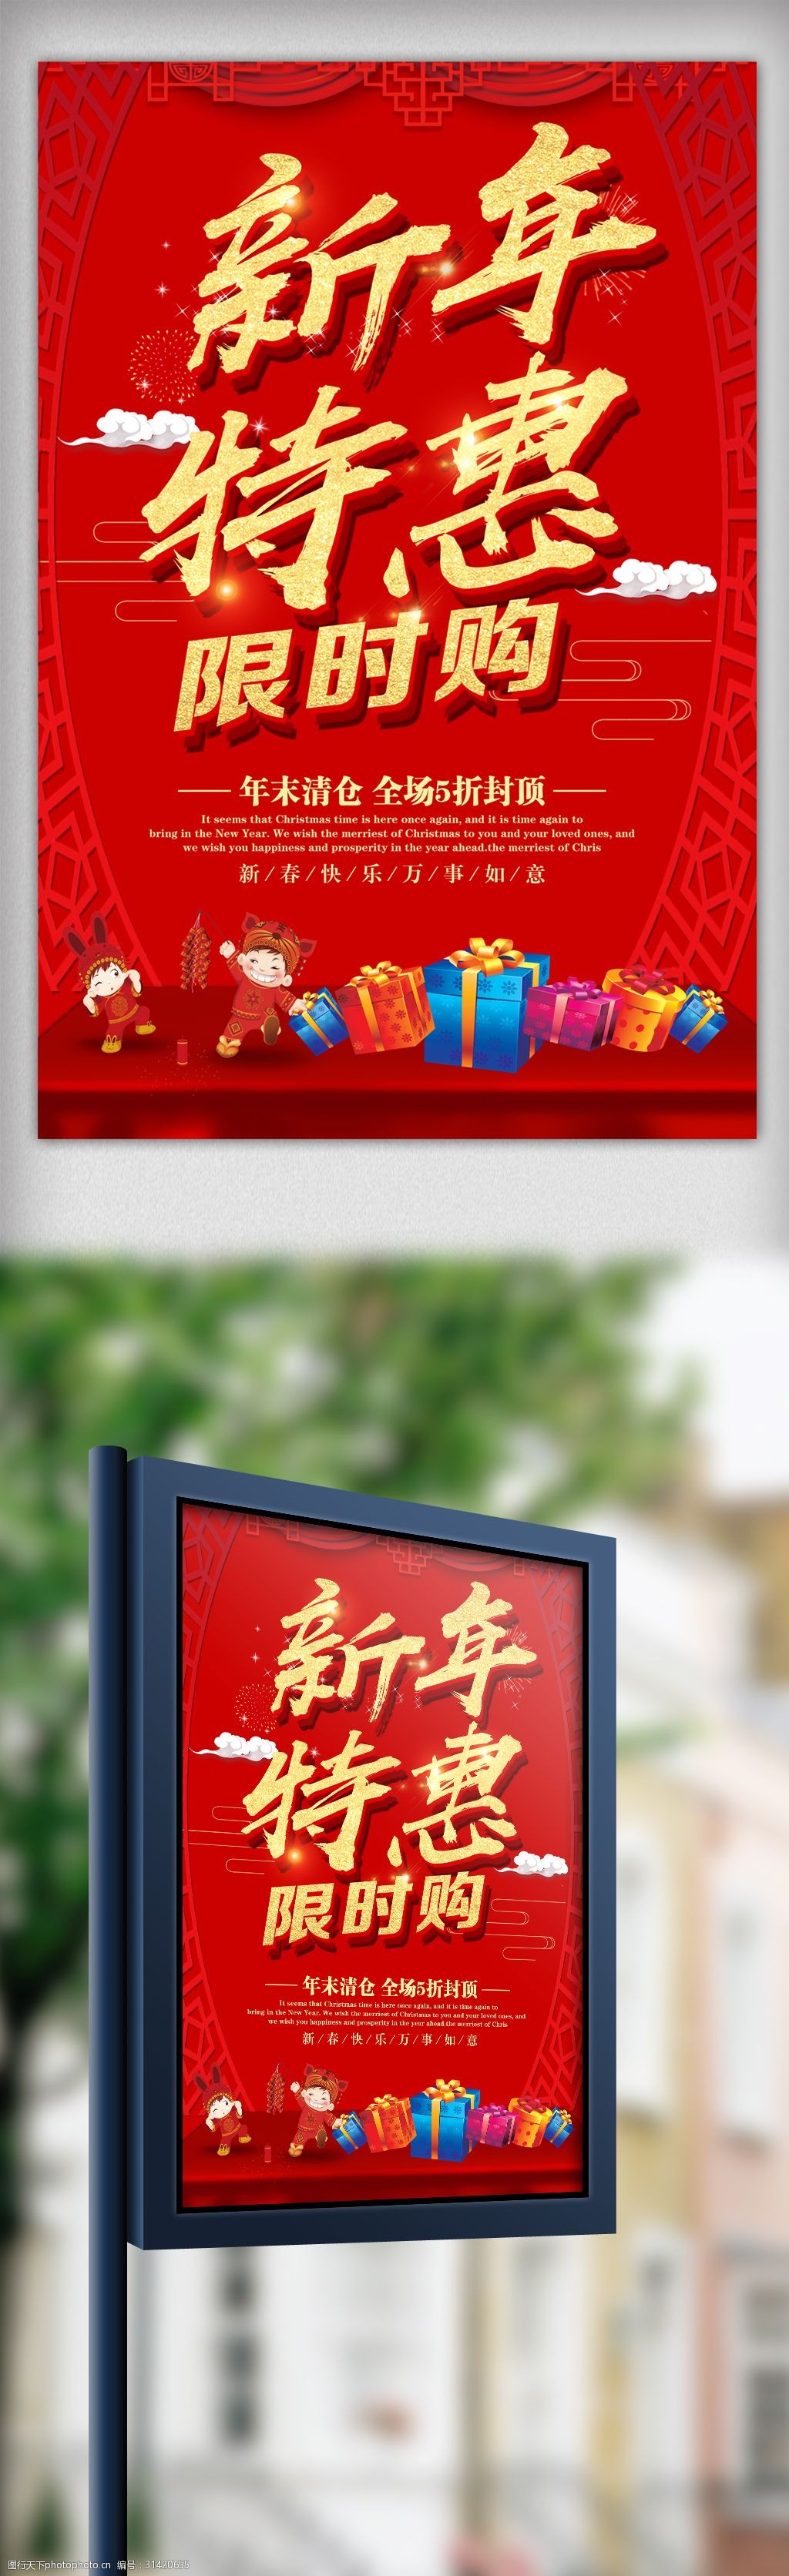 红色喜庆新年特惠超市促销海报设计